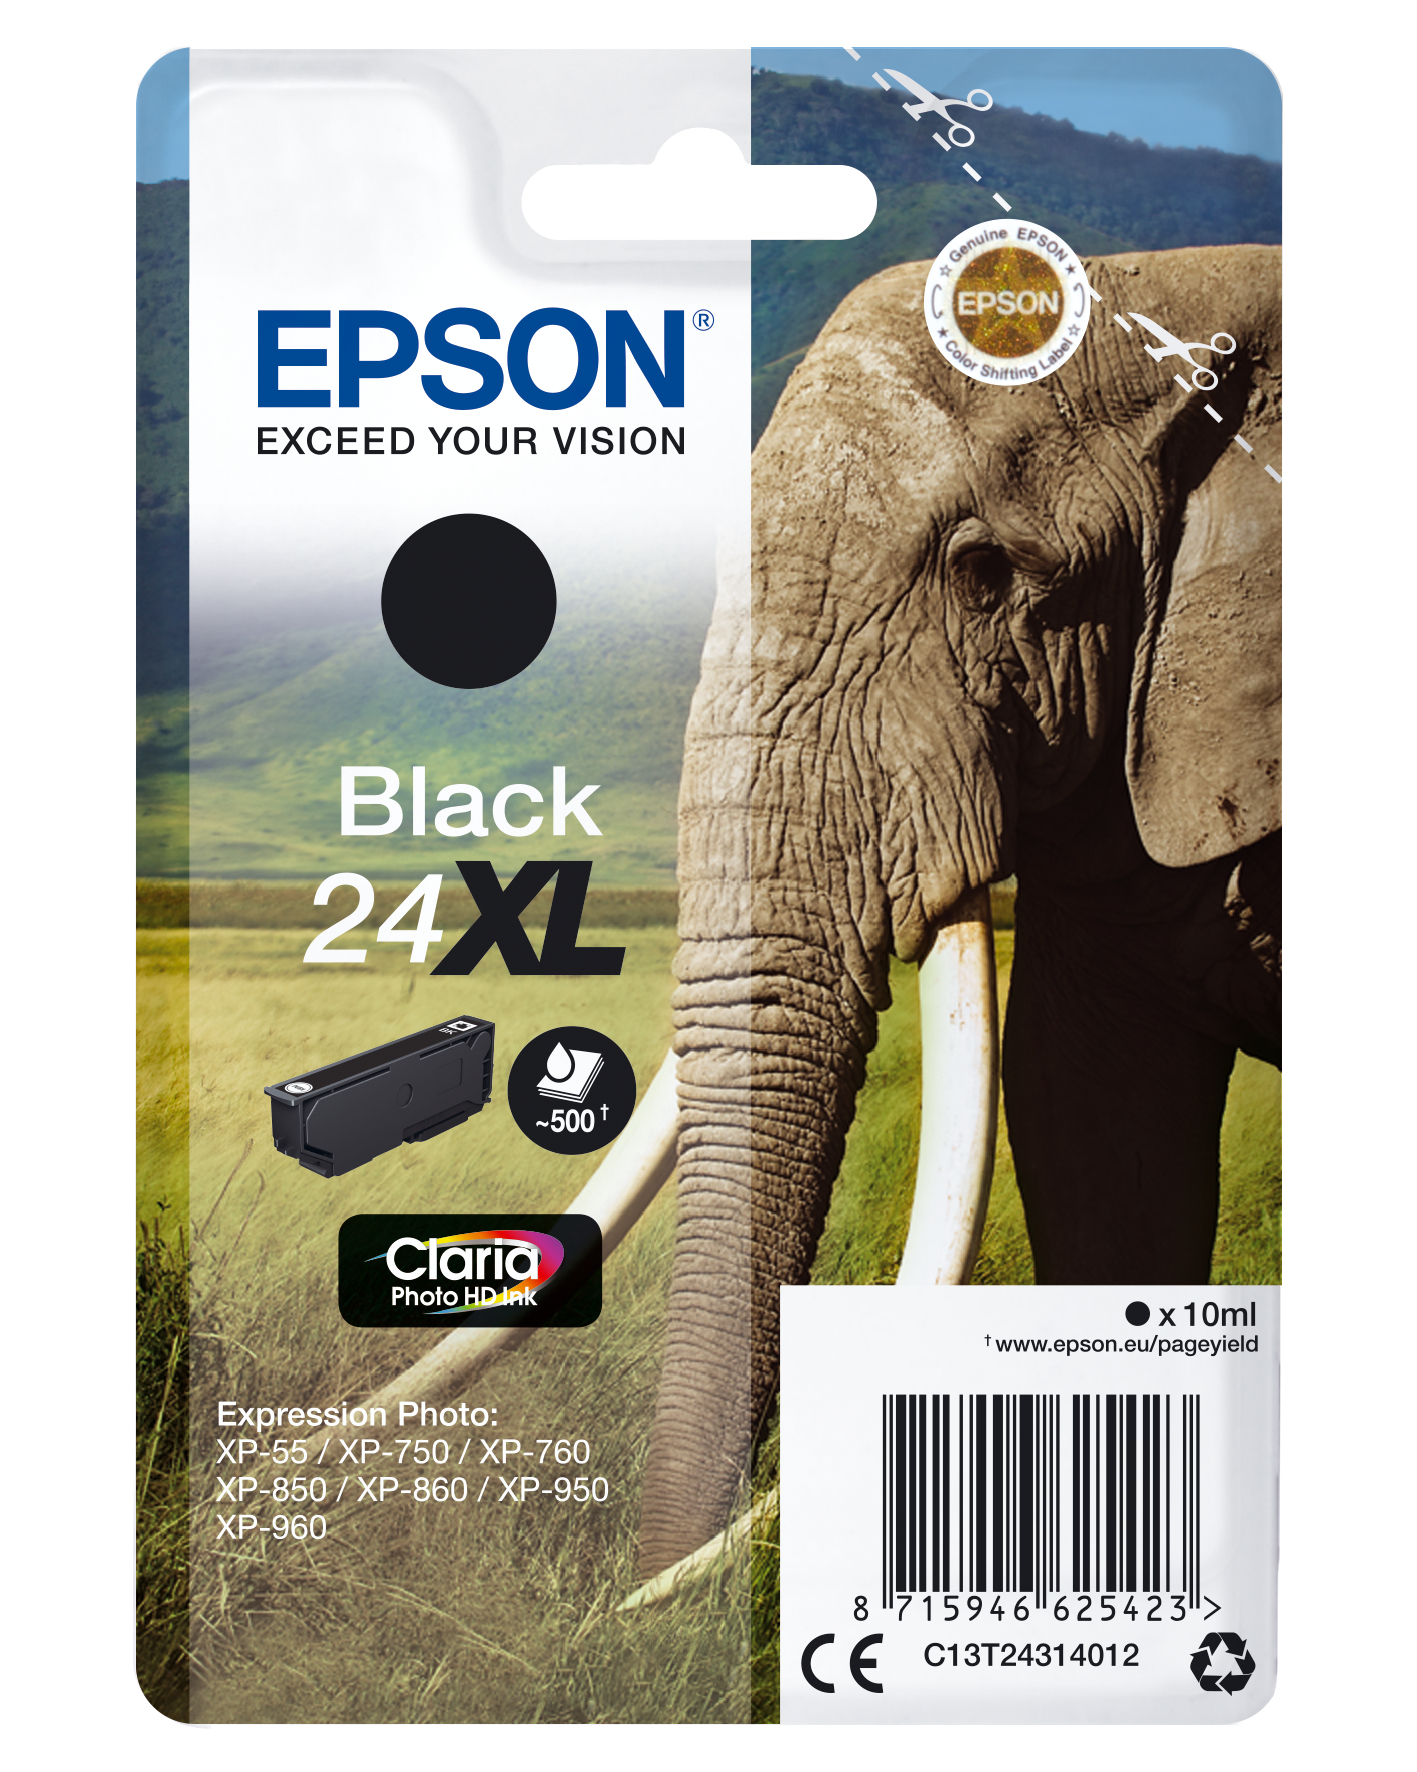 Epson Elephant Enpack svart 24XL Claria Photo HD-bläck